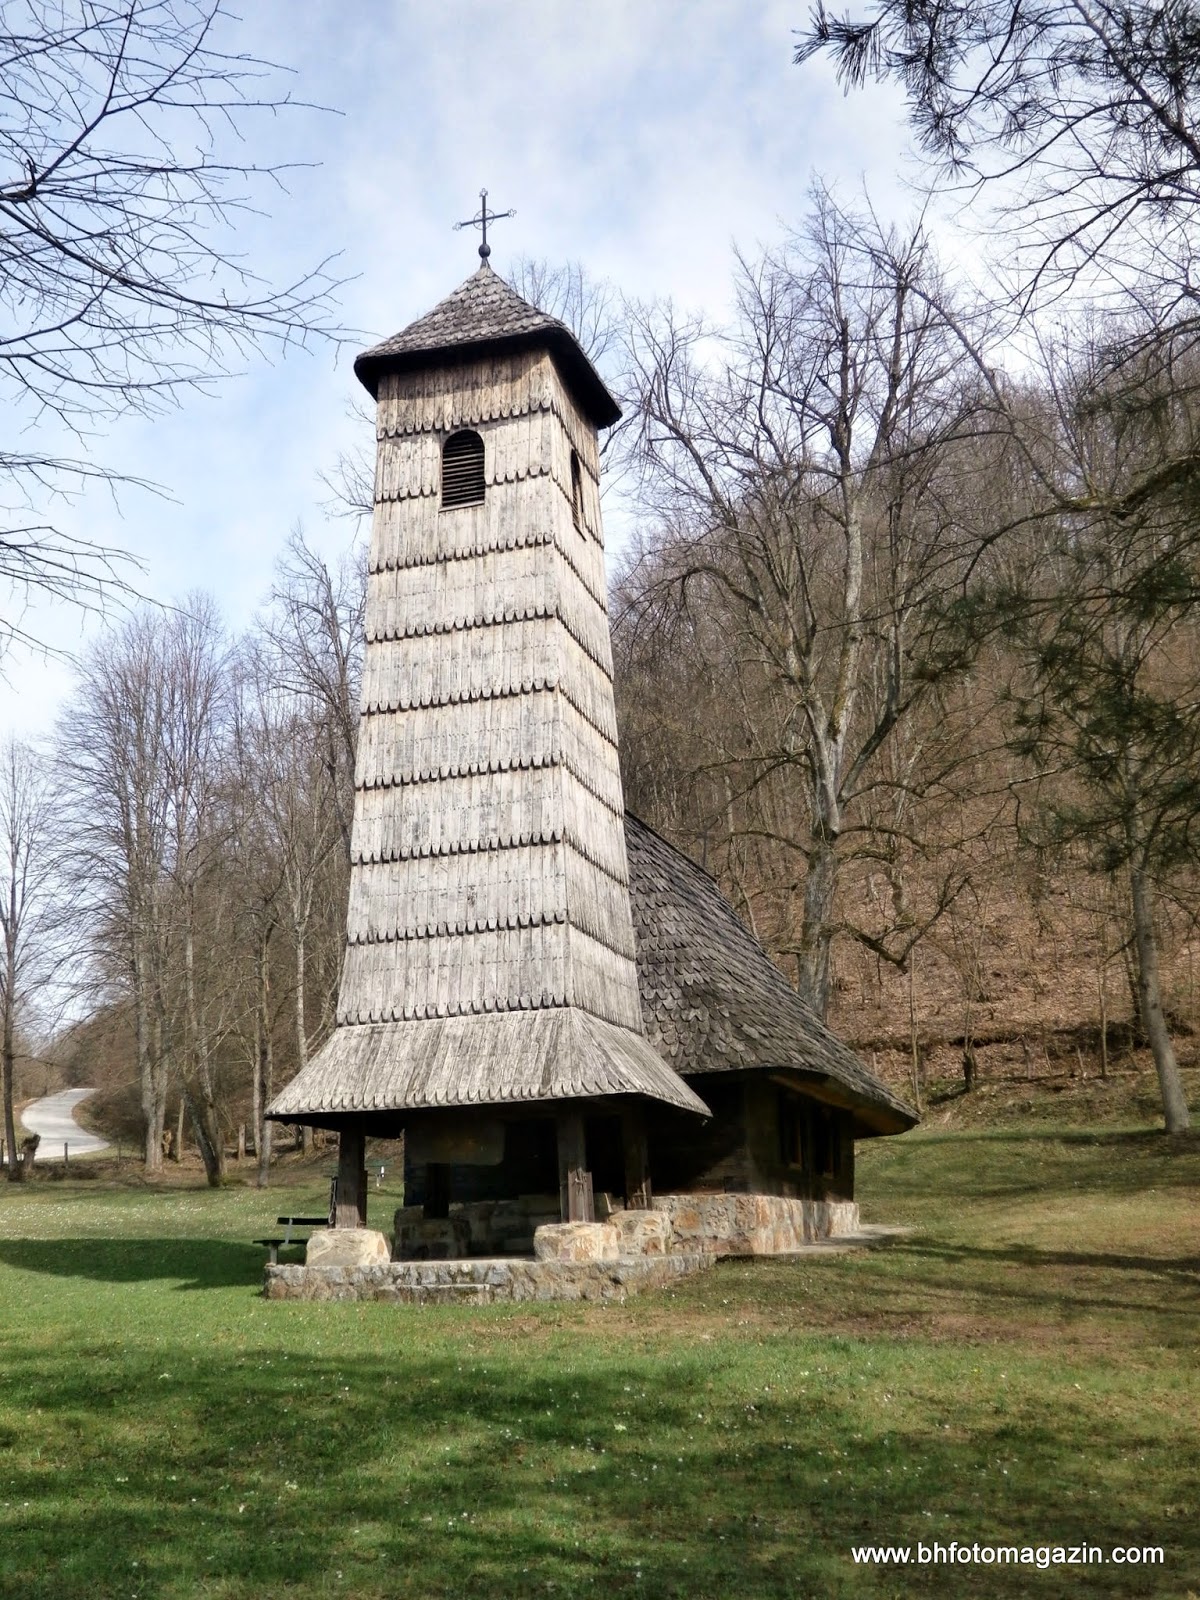 Pravoslavna crkva brvnara (crkva posvećena Prenosu moštiju sv. Nikole) u Jelićki